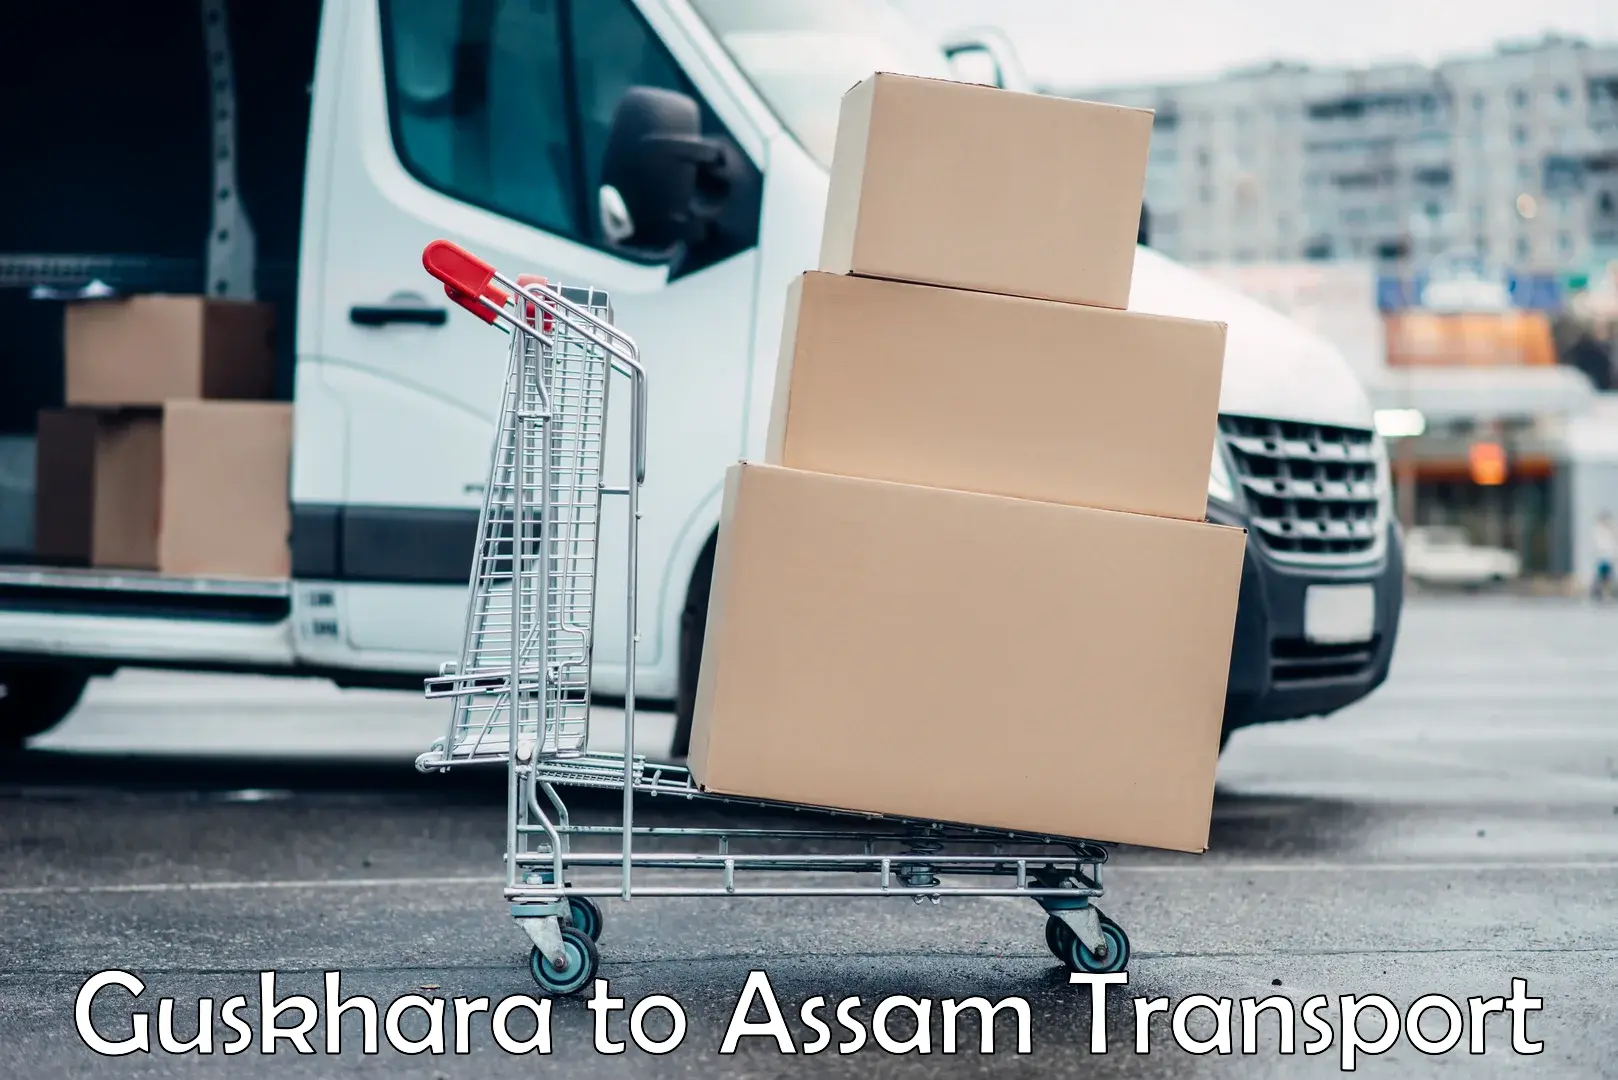 Cargo transportation services Guskhara to Darranga Mela